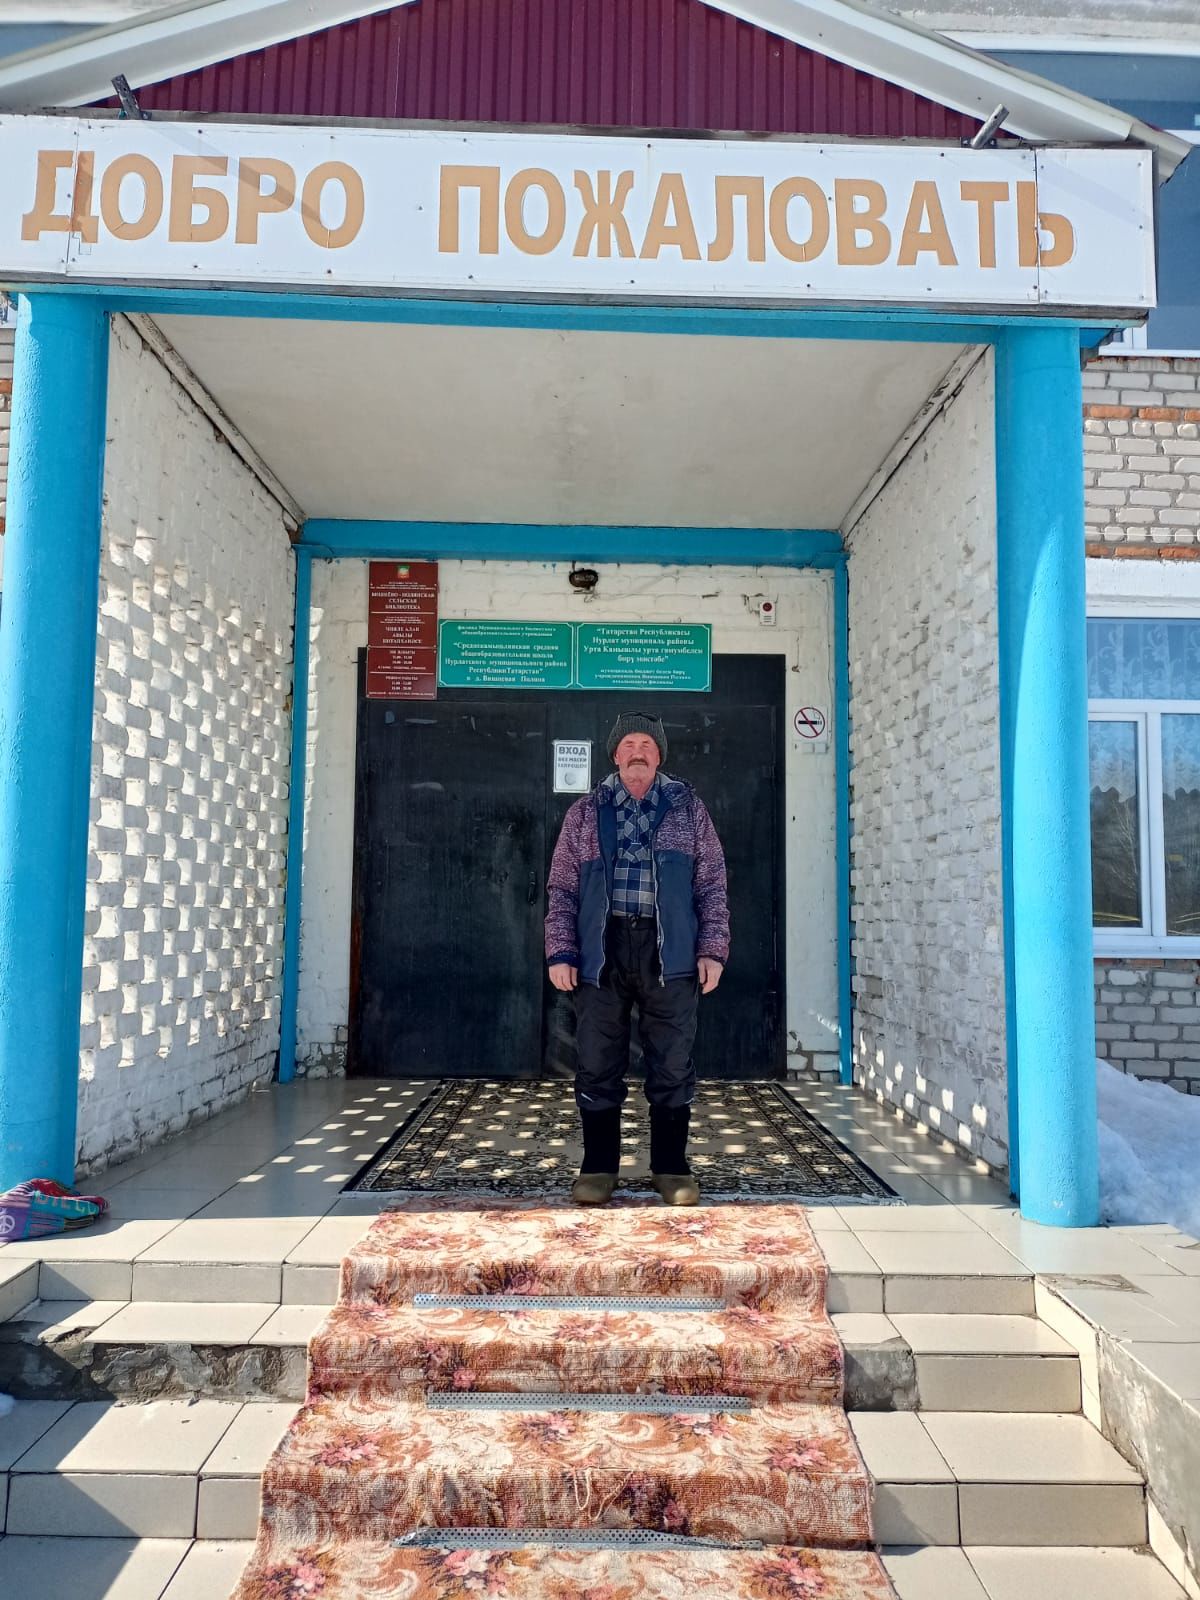 Михаил Волков из села Вишневая Поляна в свои 73 года занимается спортом и не жалуется на свое здоровье